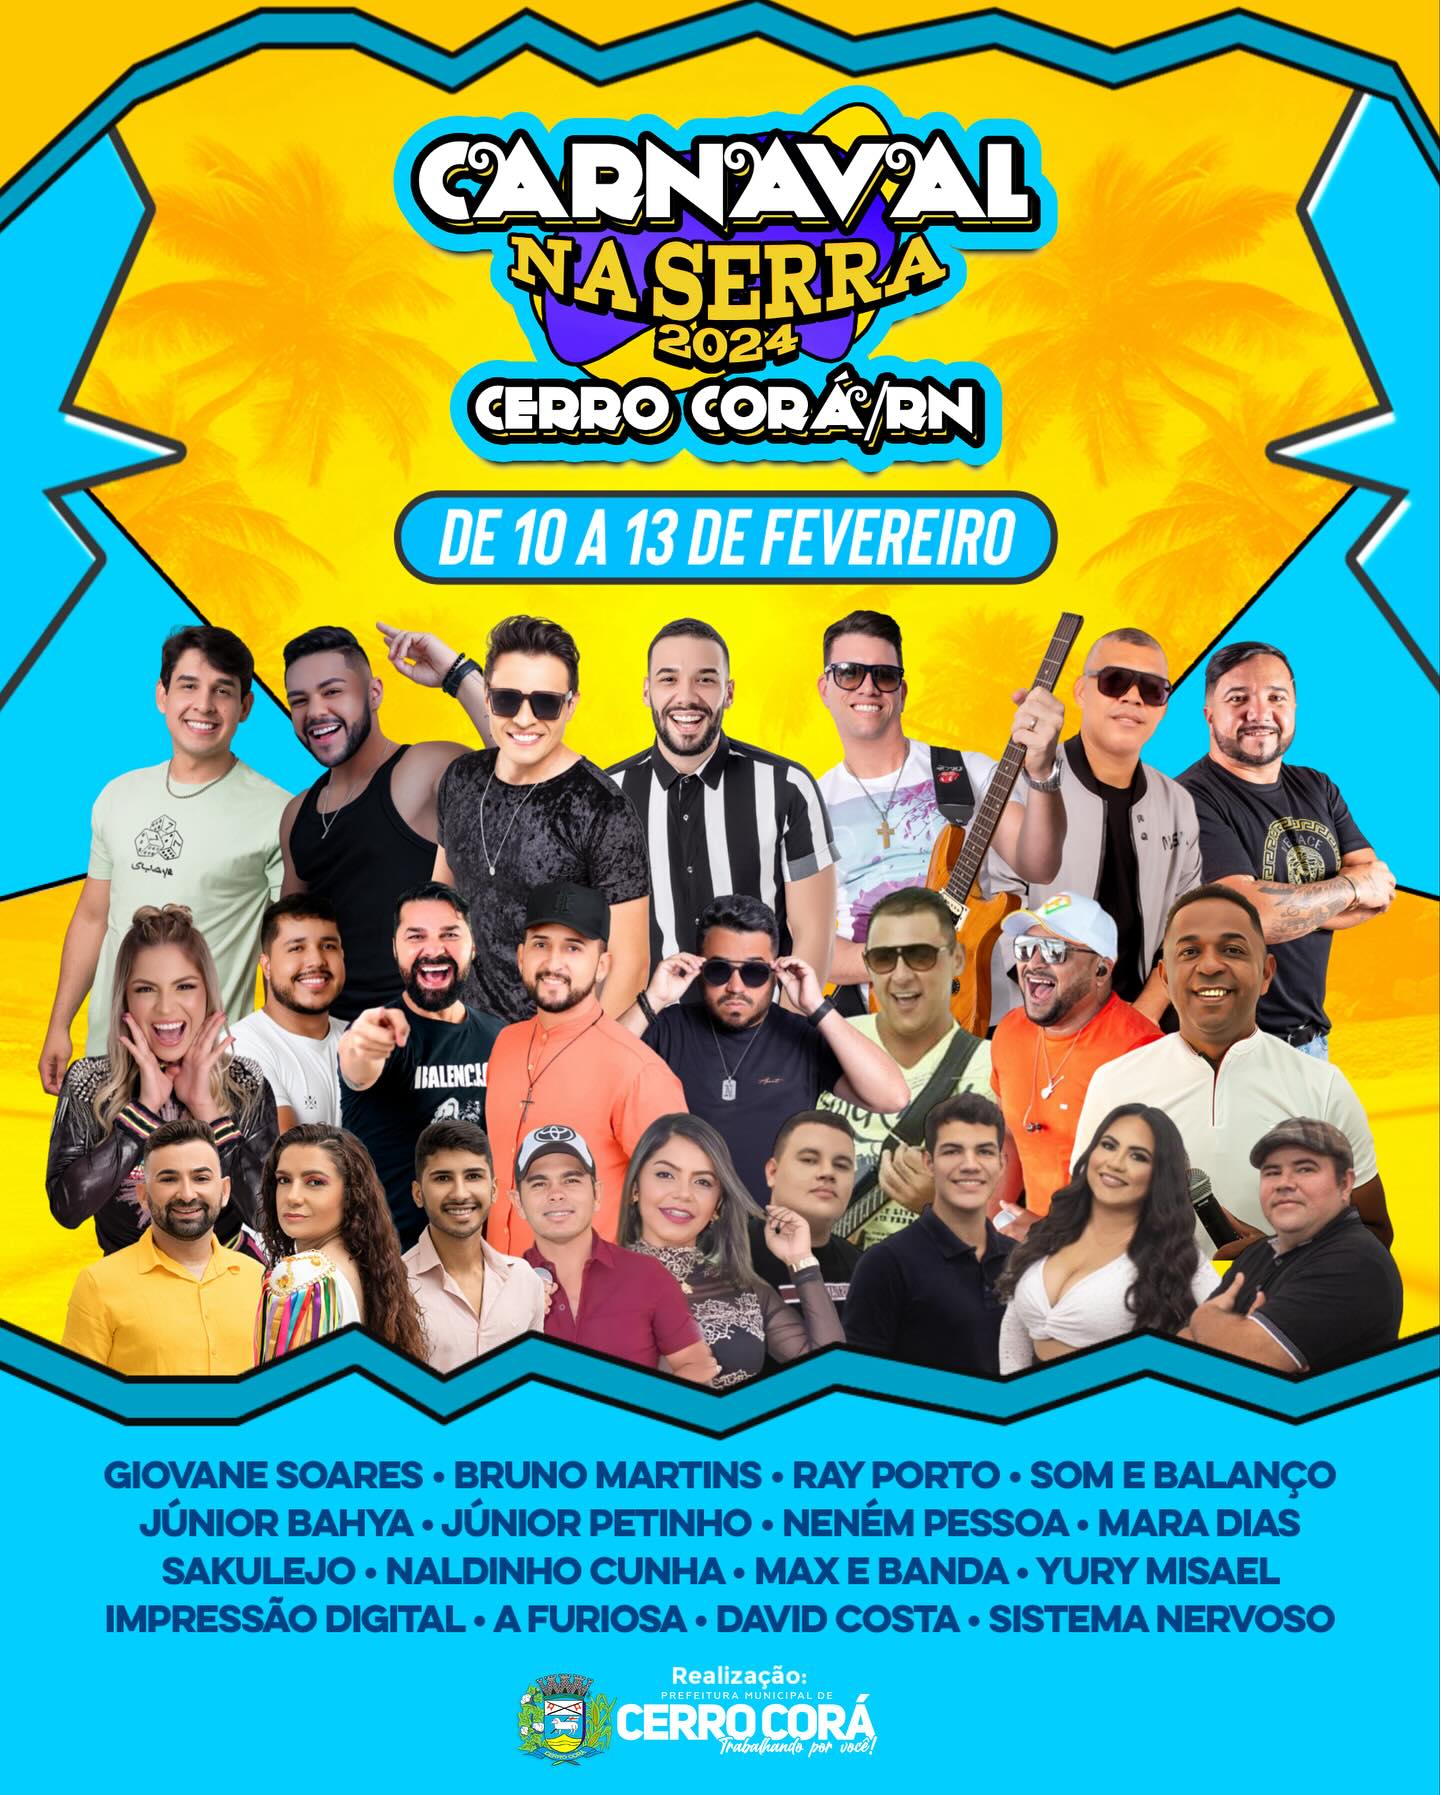 Cerro Corá: Confira a programação oficial do Carnaval na Serra 2024, com grandes shows gratuitos em praça pública.